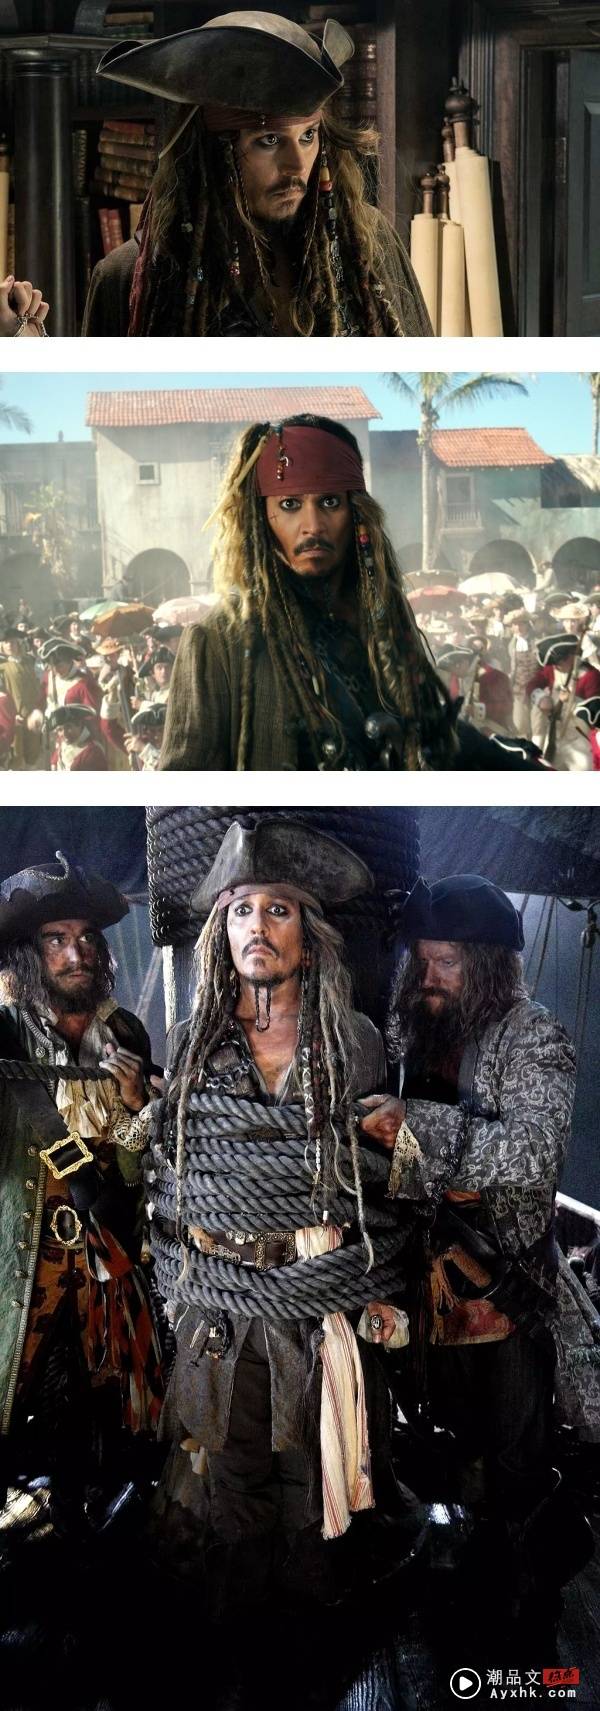 当年把Johnny Depp踢出《Pirates of the Caribbean》！Disney捧3亿美金求他回归 娱乐资讯 图1张